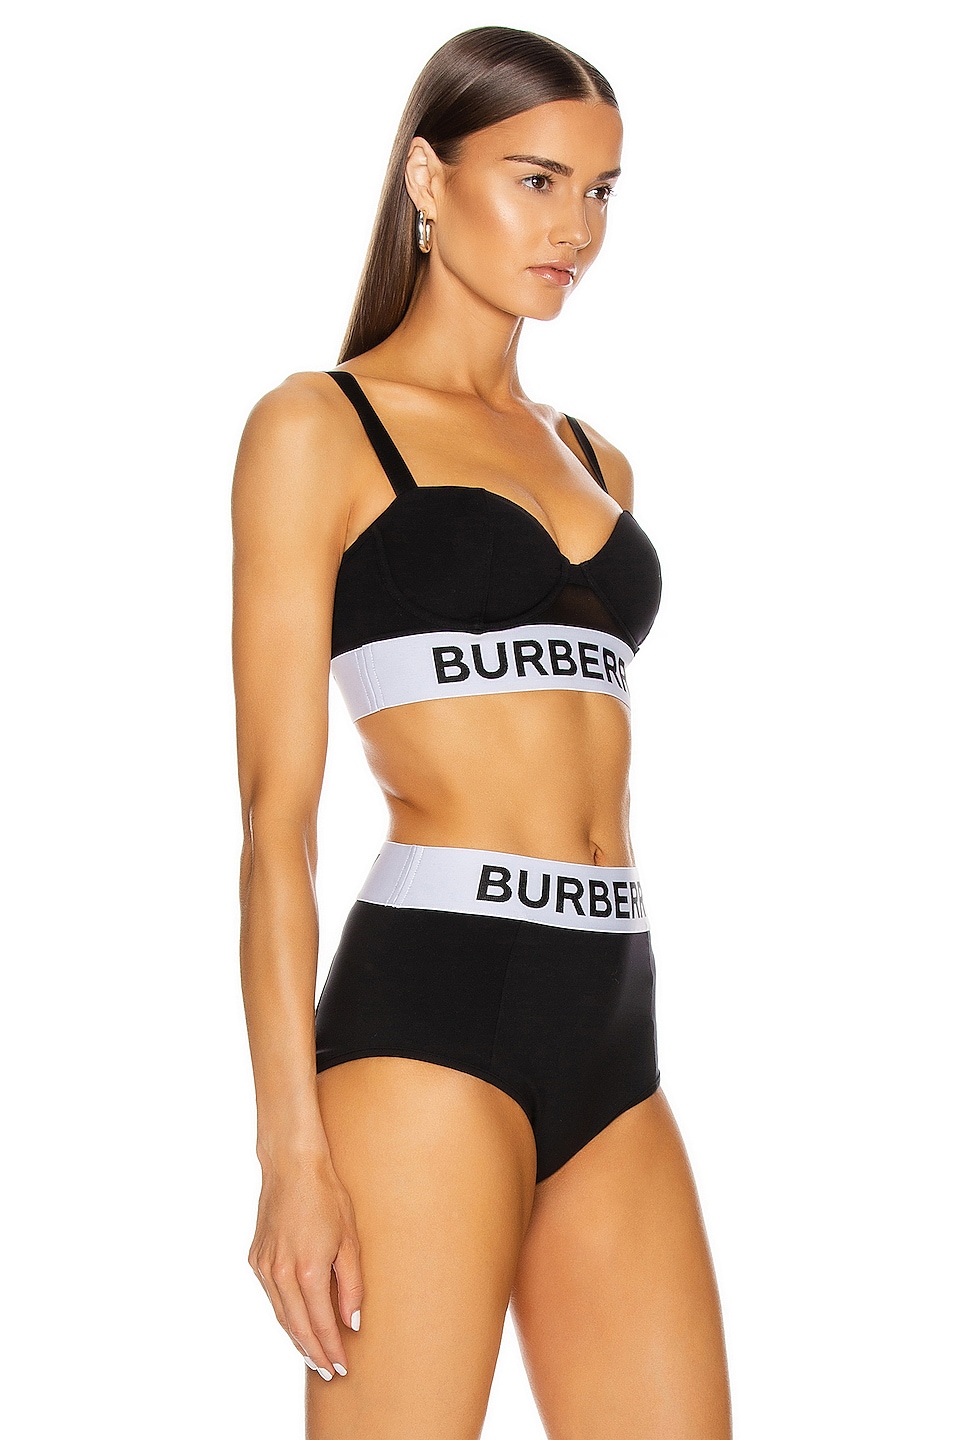 Bikini Top Styles Burberry Corset Style Bikini Top in Black FWRD